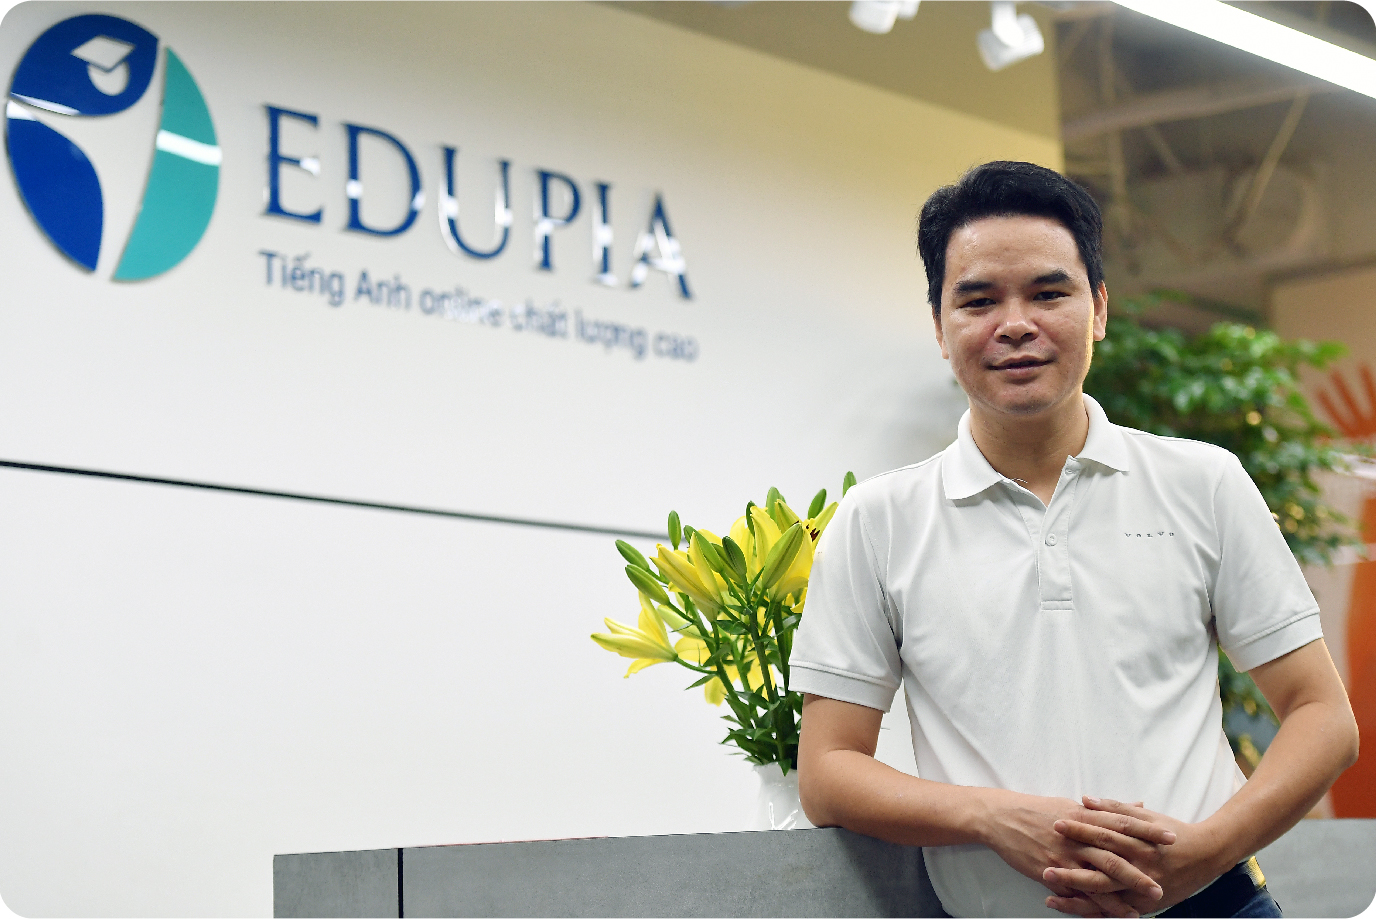 Cựu Giám đốc Digital của Viettel Telecom khởi nghiệp, lập nên Edtech dạy tiếng Anh số 1 Việt Nam: Tìm thấy cơ hội khi về quê, mơ thành ‘cận kỳ lân’ năm 2025 - Ảnh 15.